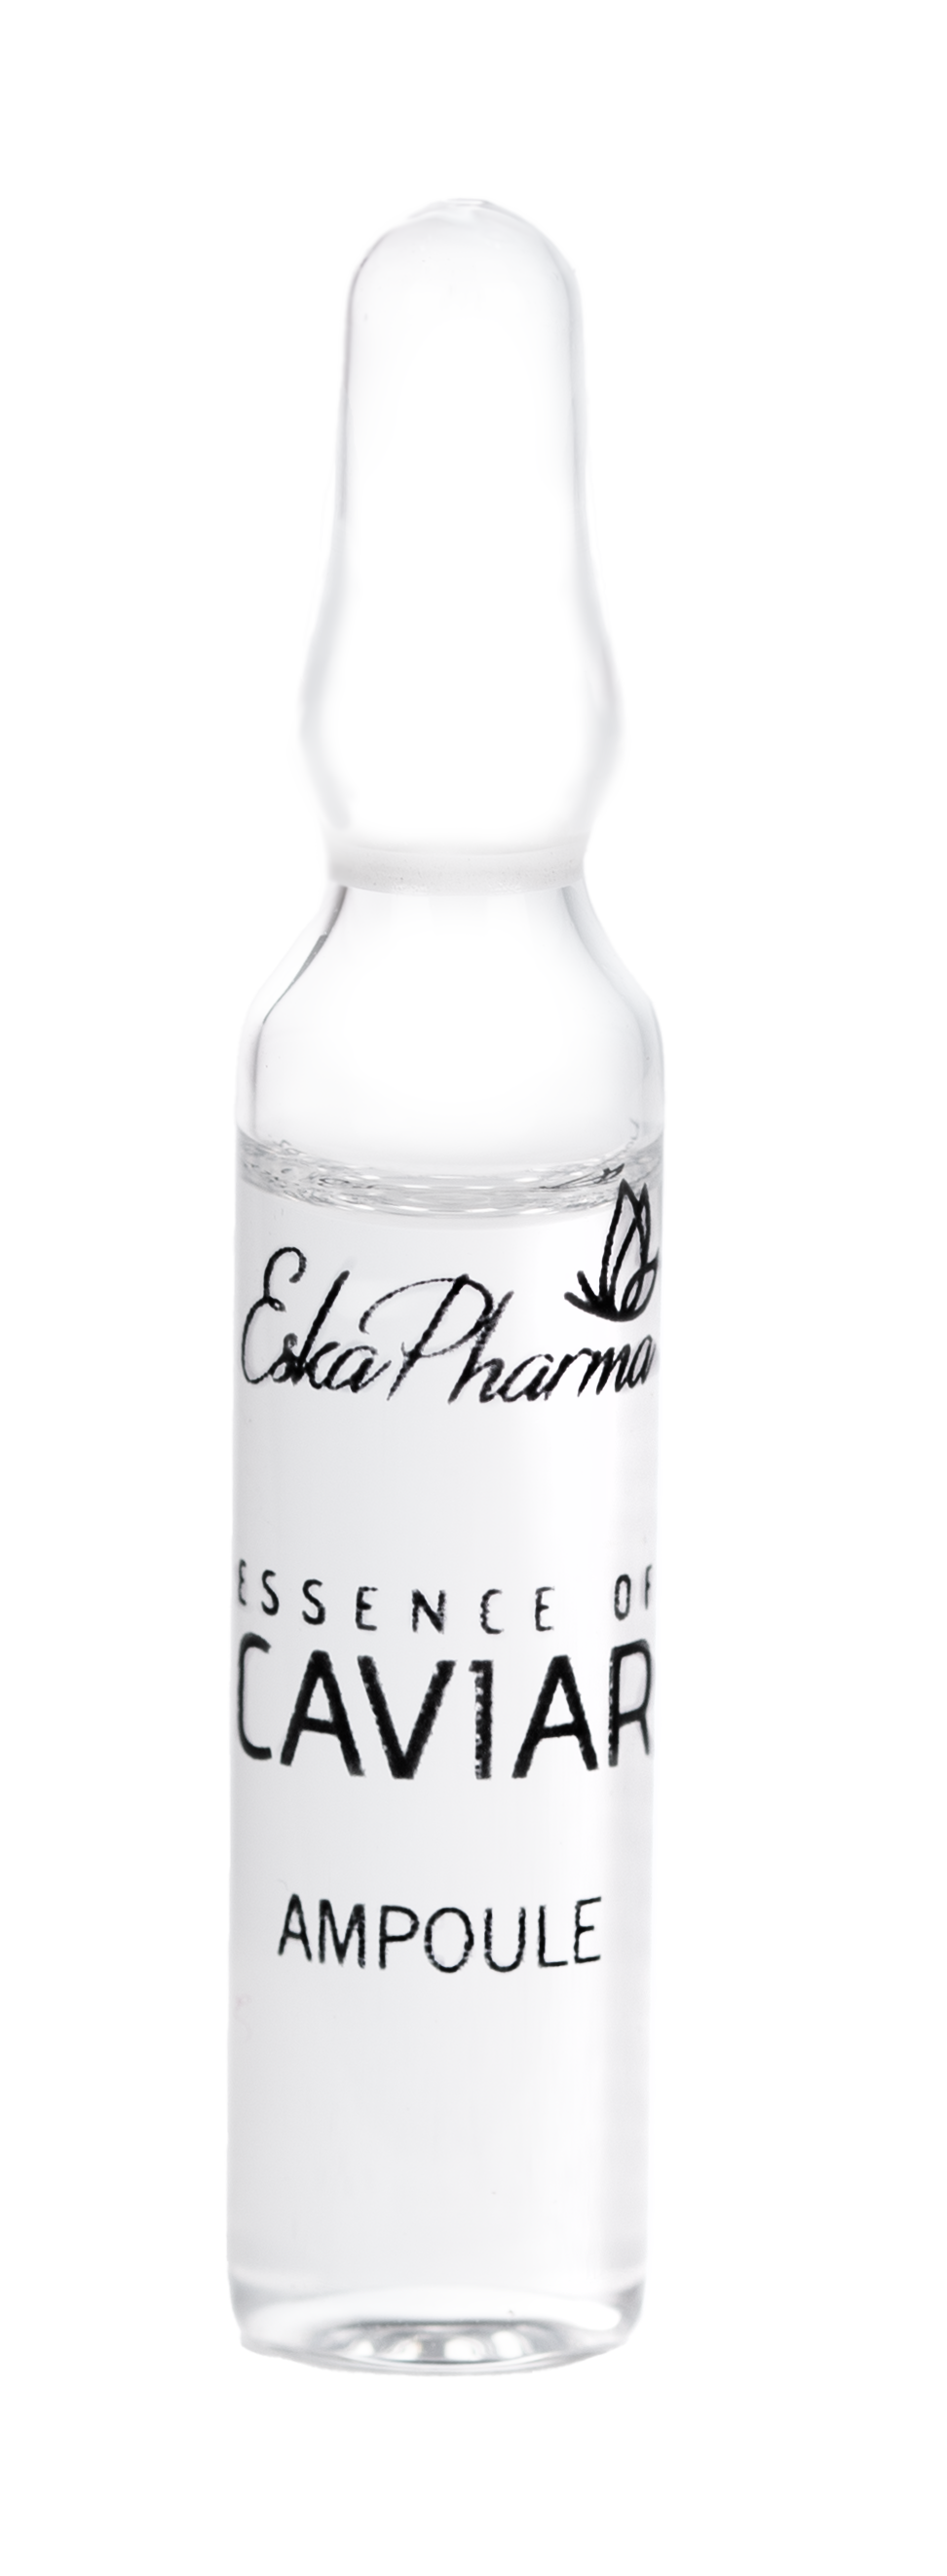 Essence of Caviar Ampoule